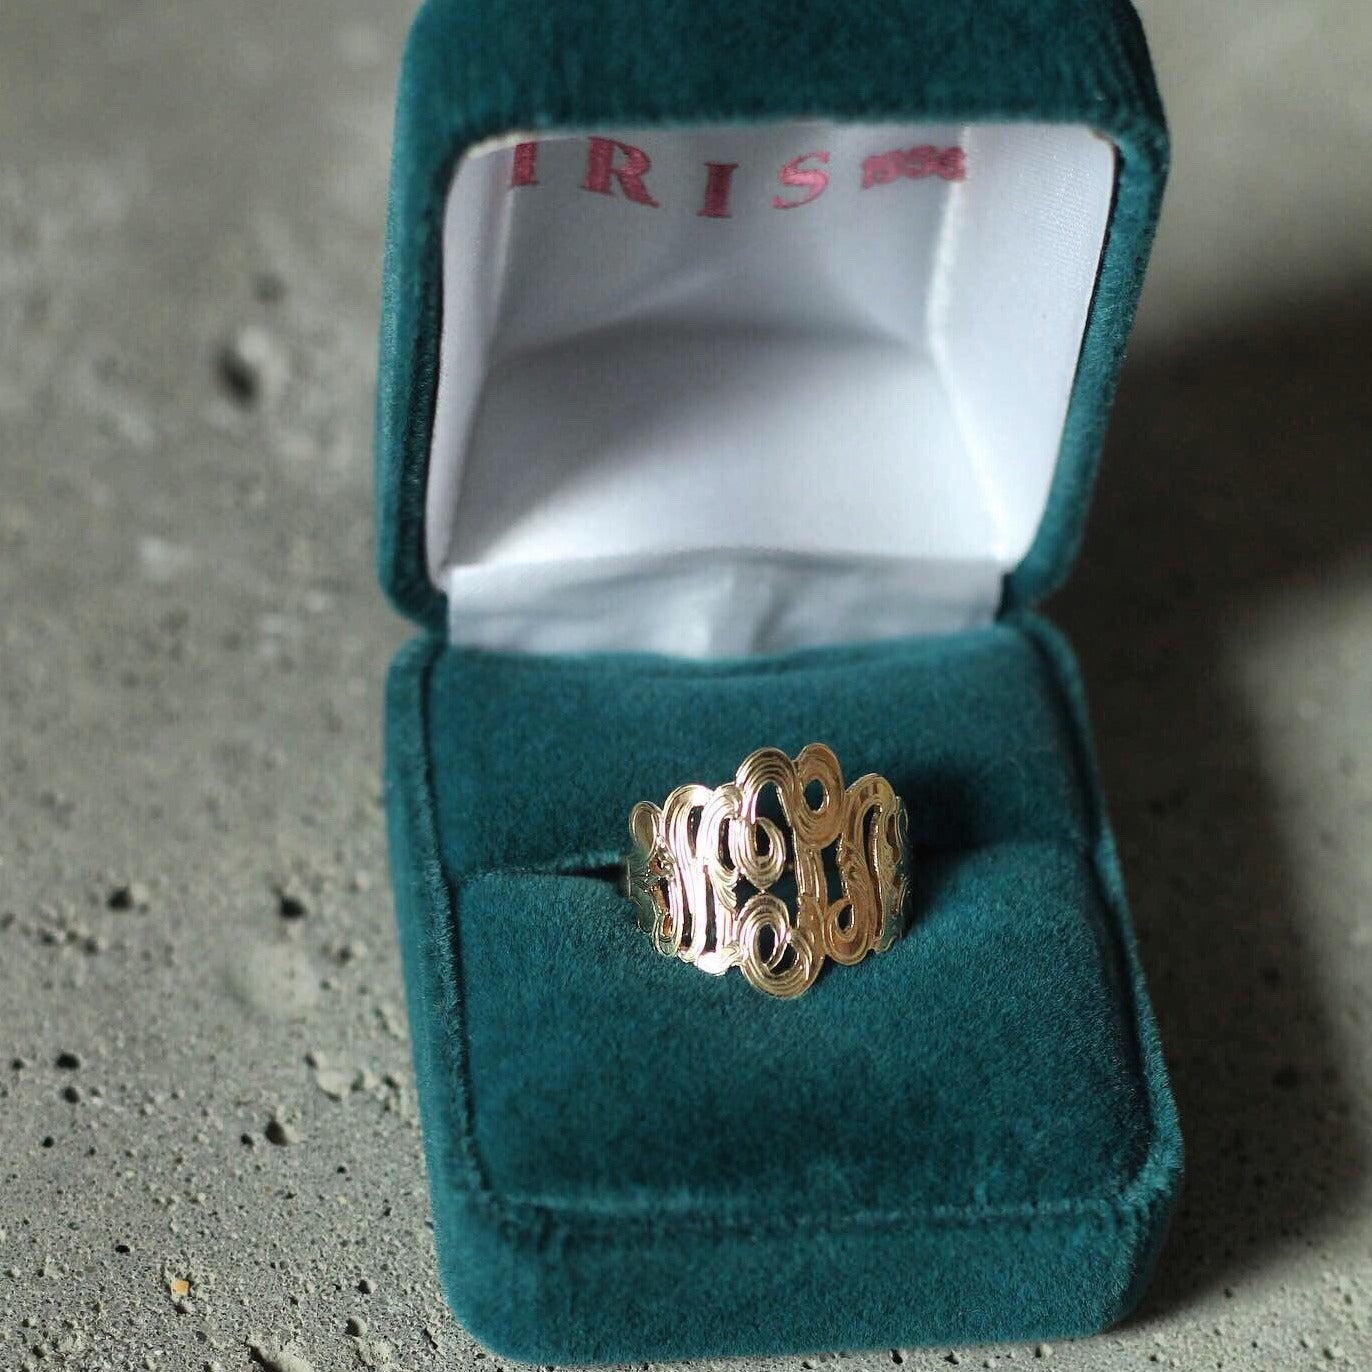 Gold Monogram Ring - Iris 1956